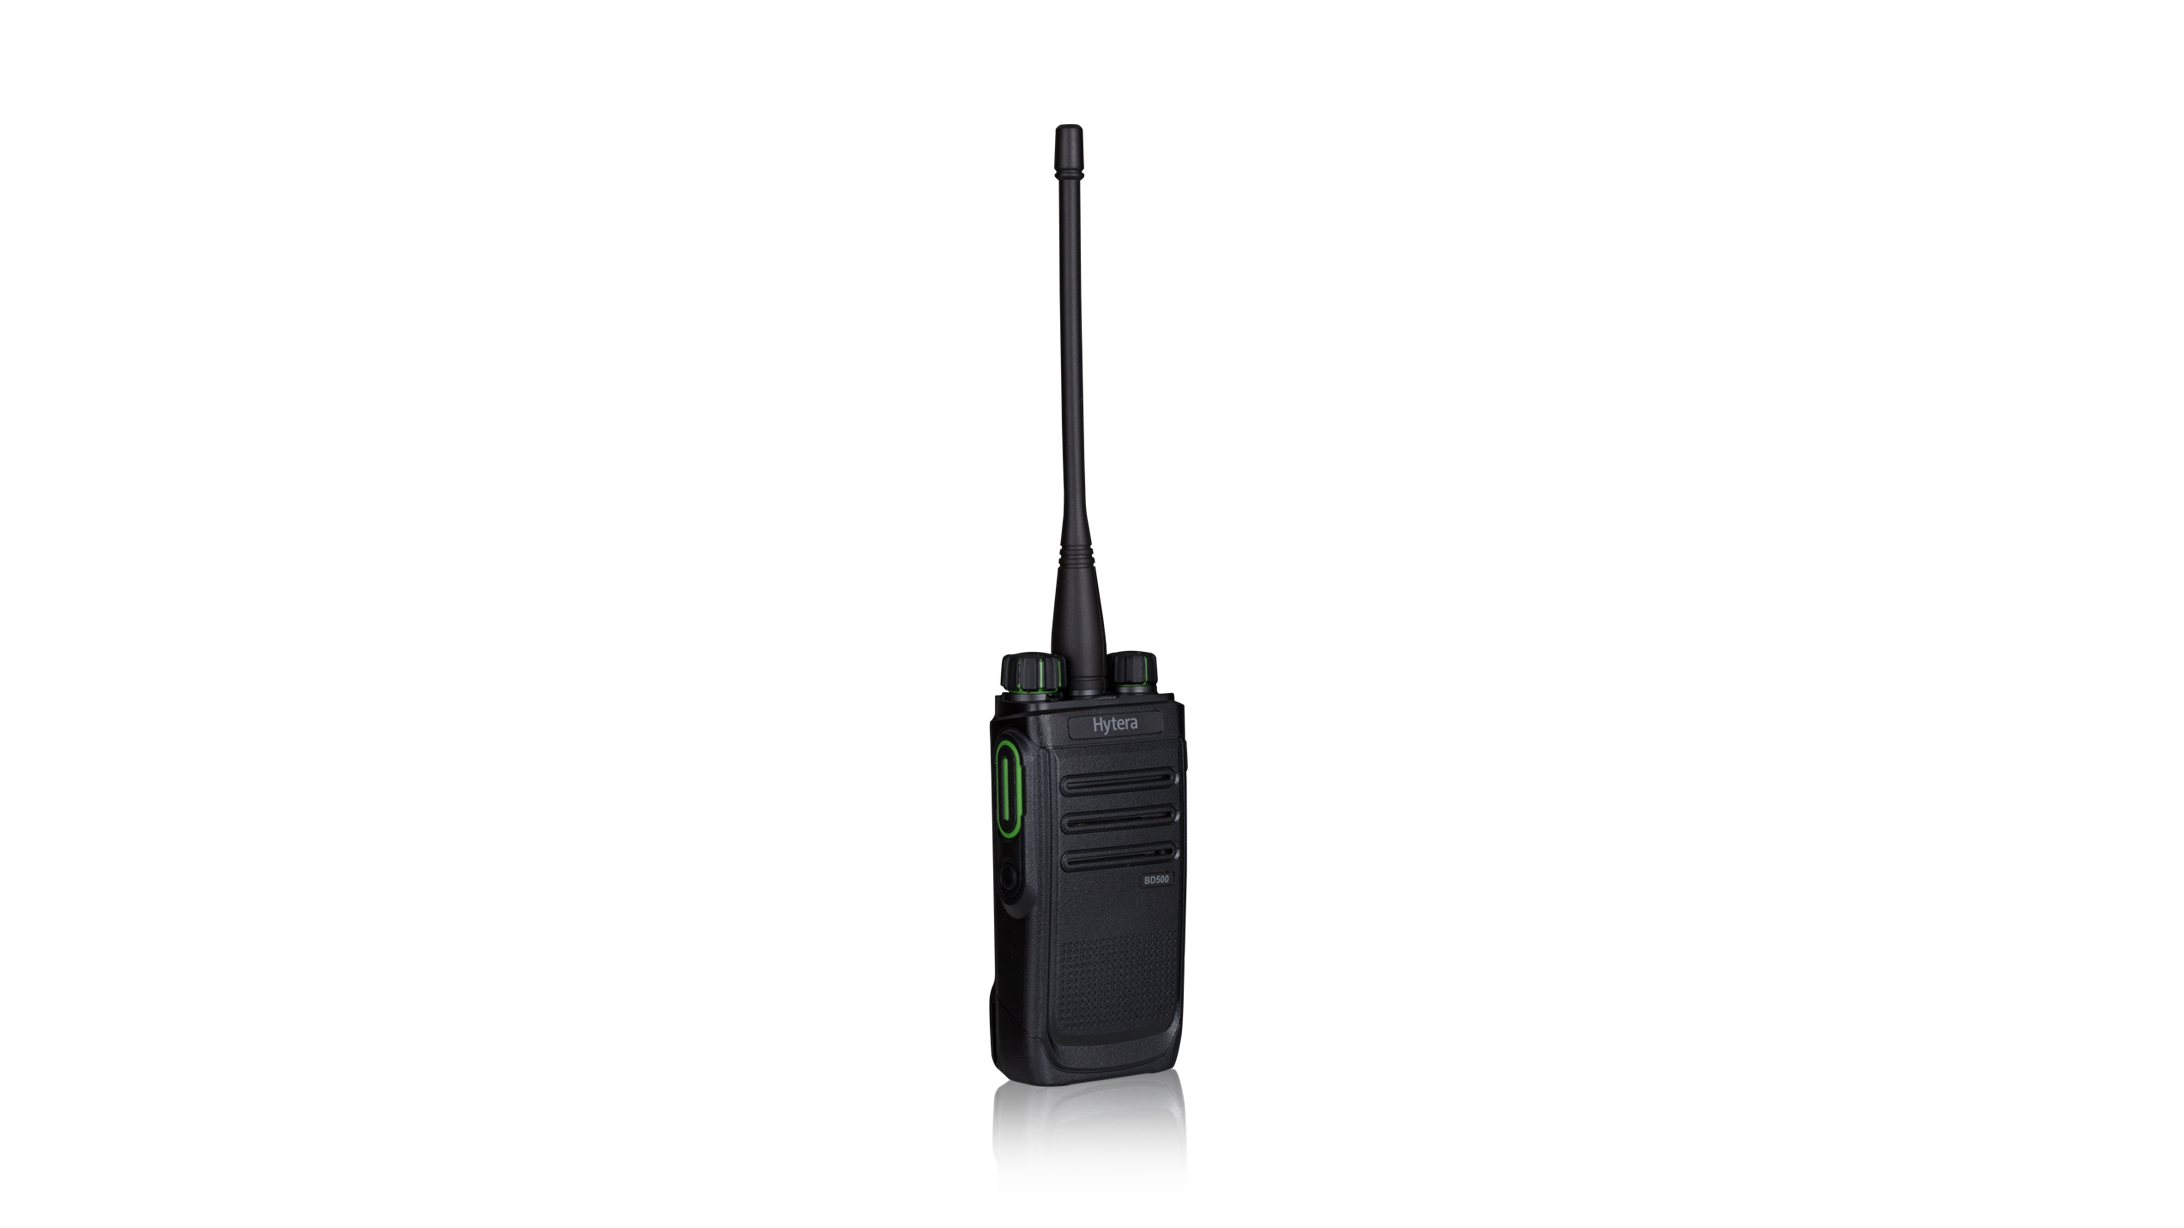 BD505 Коммерческая цифровая радиостанция DMR